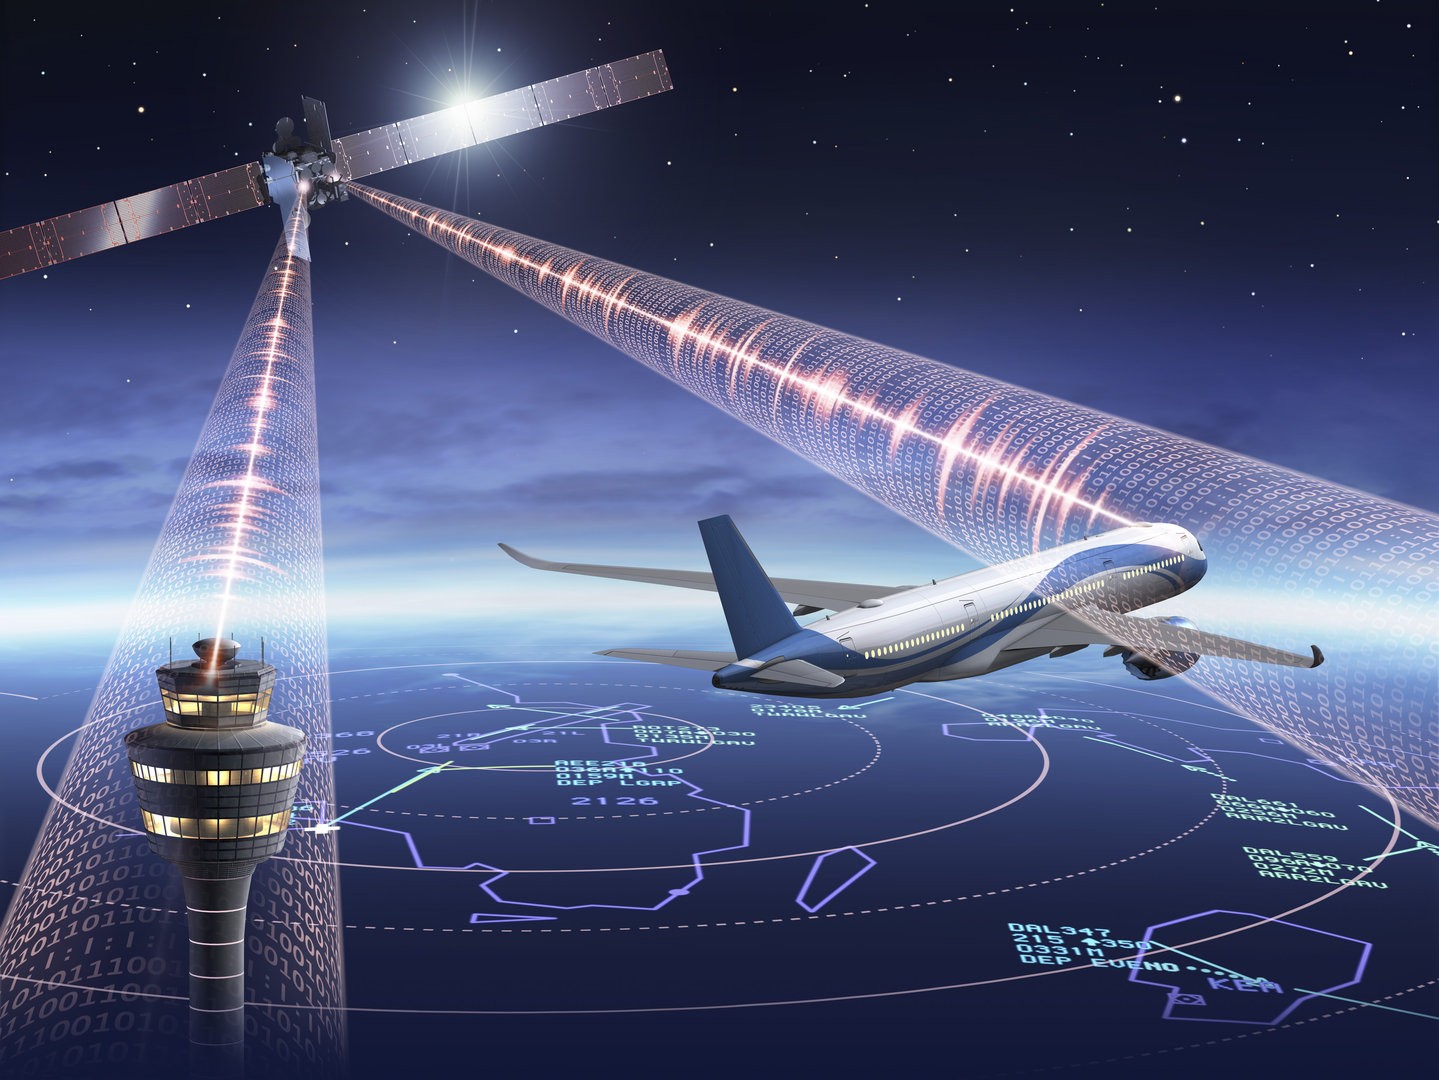 Zarys planowanego działania satelitarnego systemu zarządzania lotem Iris - ma zostać uruchomiony do 2028 roku. Ilustracja: ESA [esa.int]